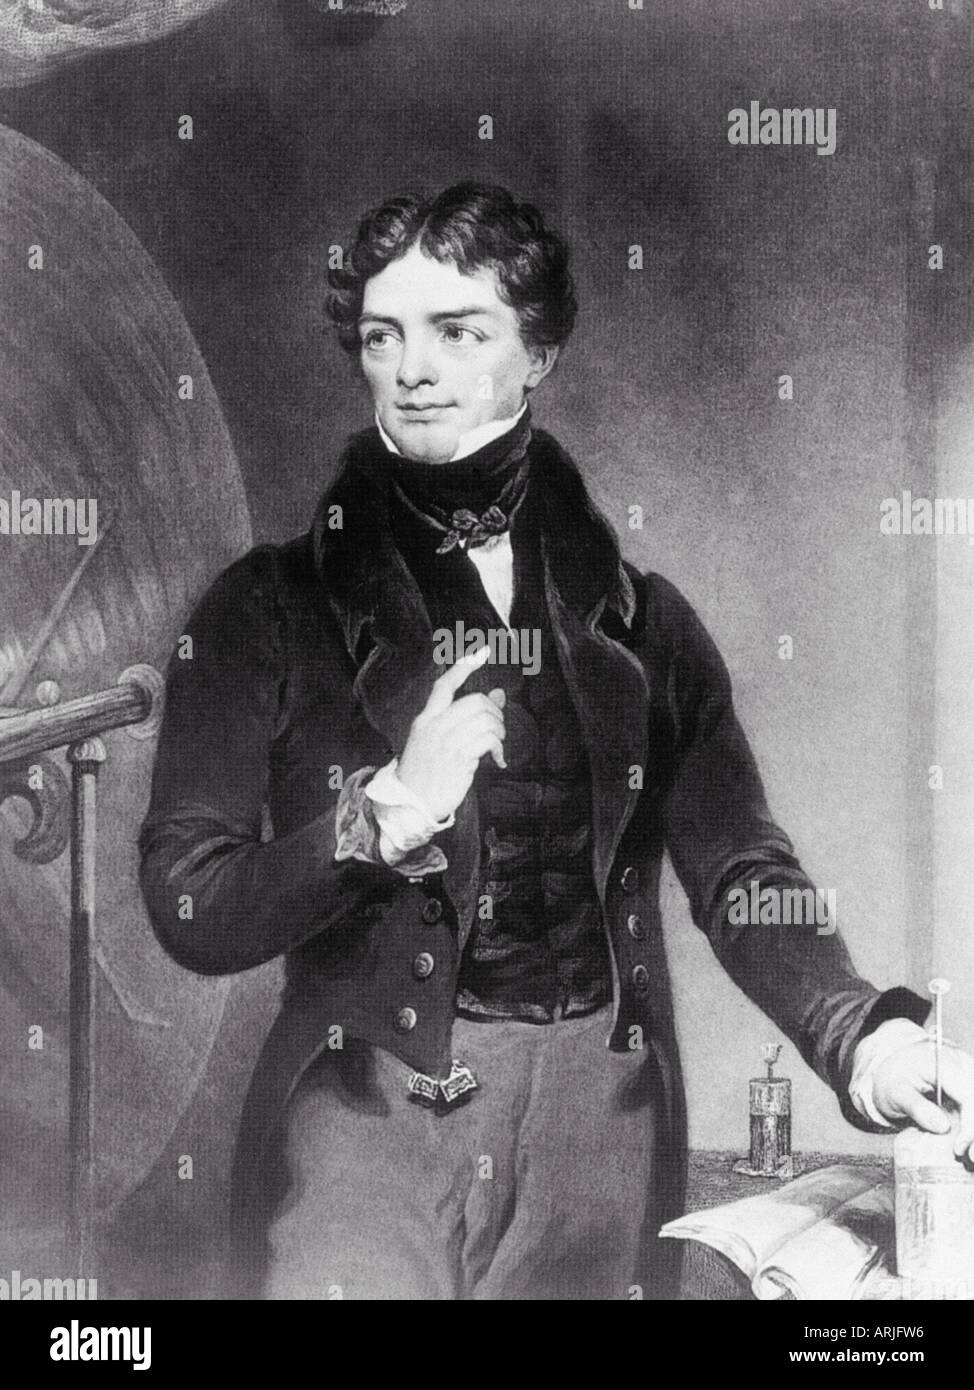 MICHAEL FARADAY physicien et chimiste anglais 1791 à 1867 qui a découvert l'electomagnetism qui ont conduit à l'invention de la dynamo Banque D'Images